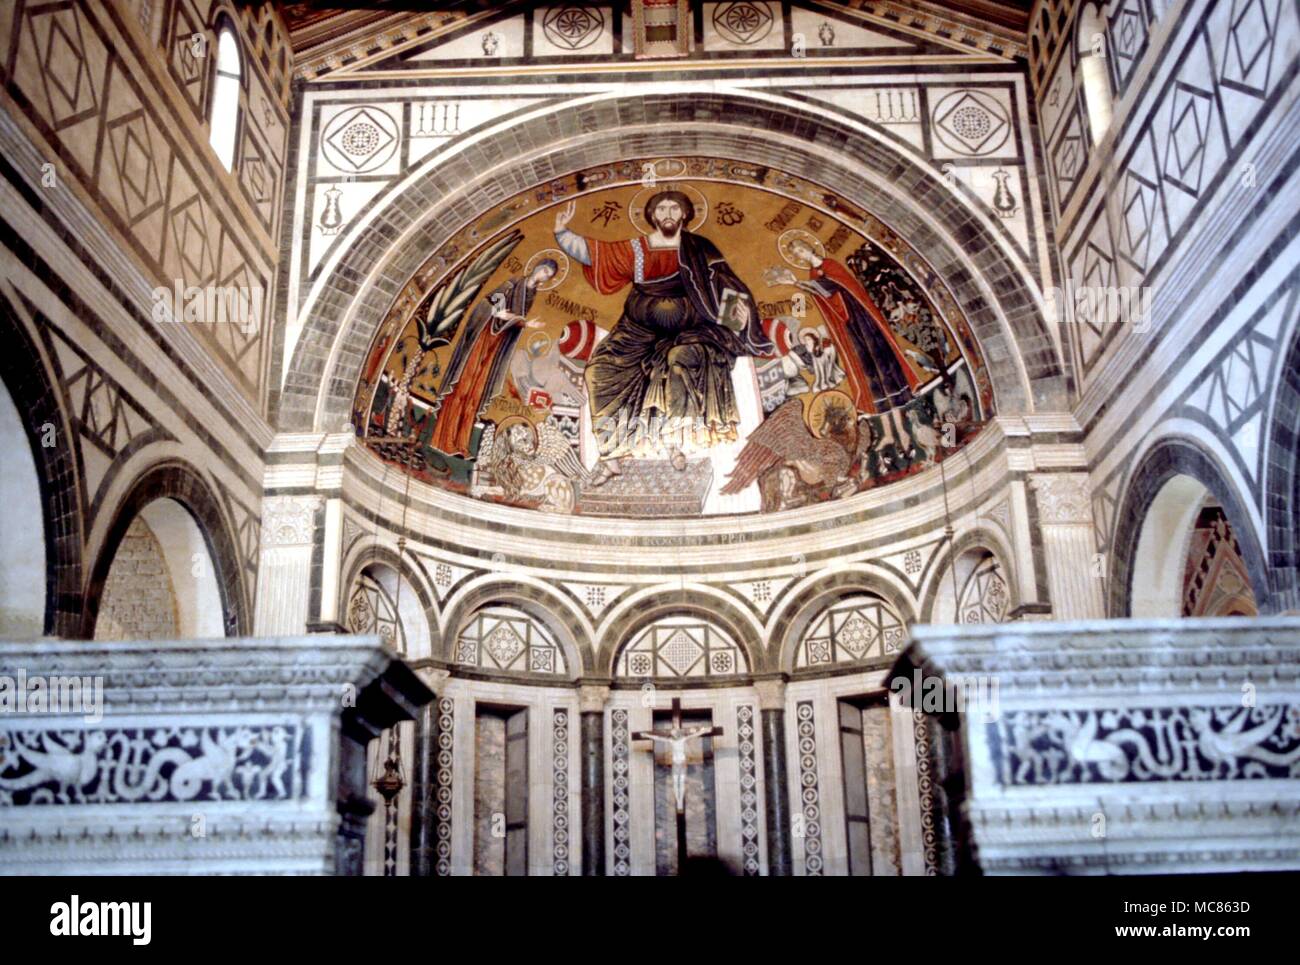 CHRISTIAN 13. Jahrhundert Mosaik von Christus in Herrlichkeit, über dem Altar Chor von San Miniato al Monte in Florenz. Das Mosaik, durch das Portal mit der Fische Fische gesehen, ist Teil der geheime Symbolik der Kirche Stockfoto